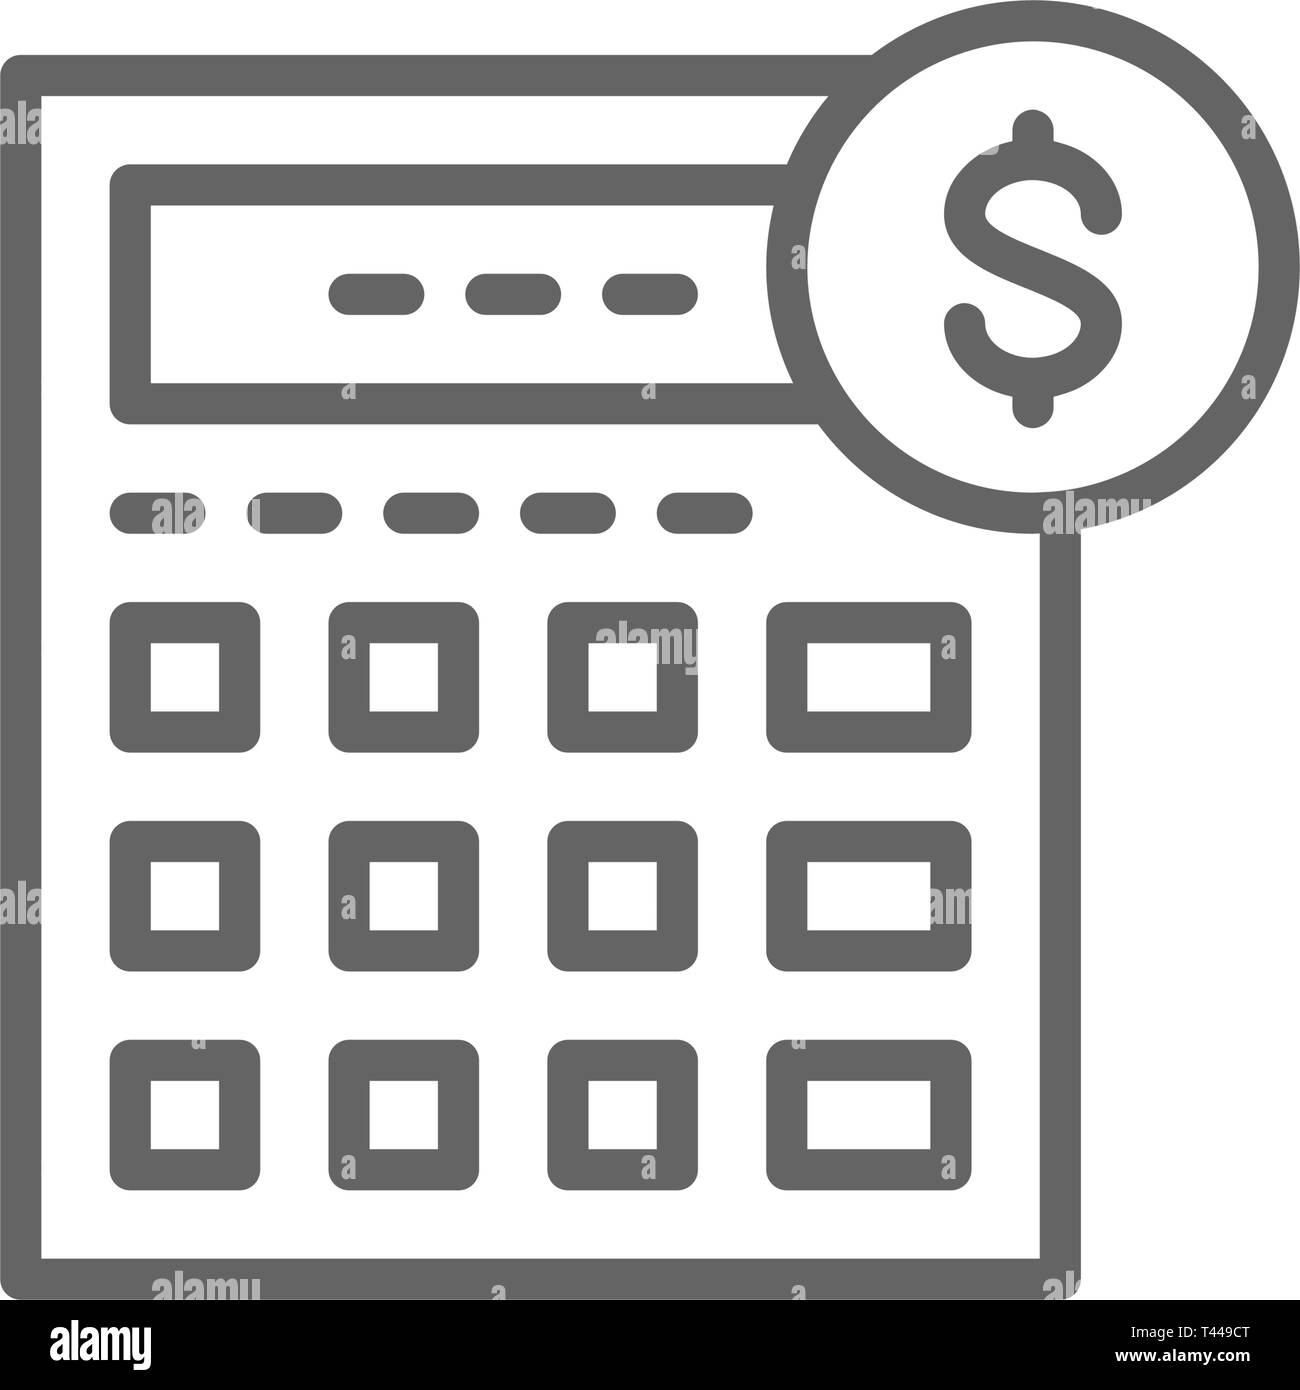 Calculatrice Tenue De Livres Comptabilite Finances Publiques L Icone De La Ligne De L Economie Image Vectorielle Stock Alamy